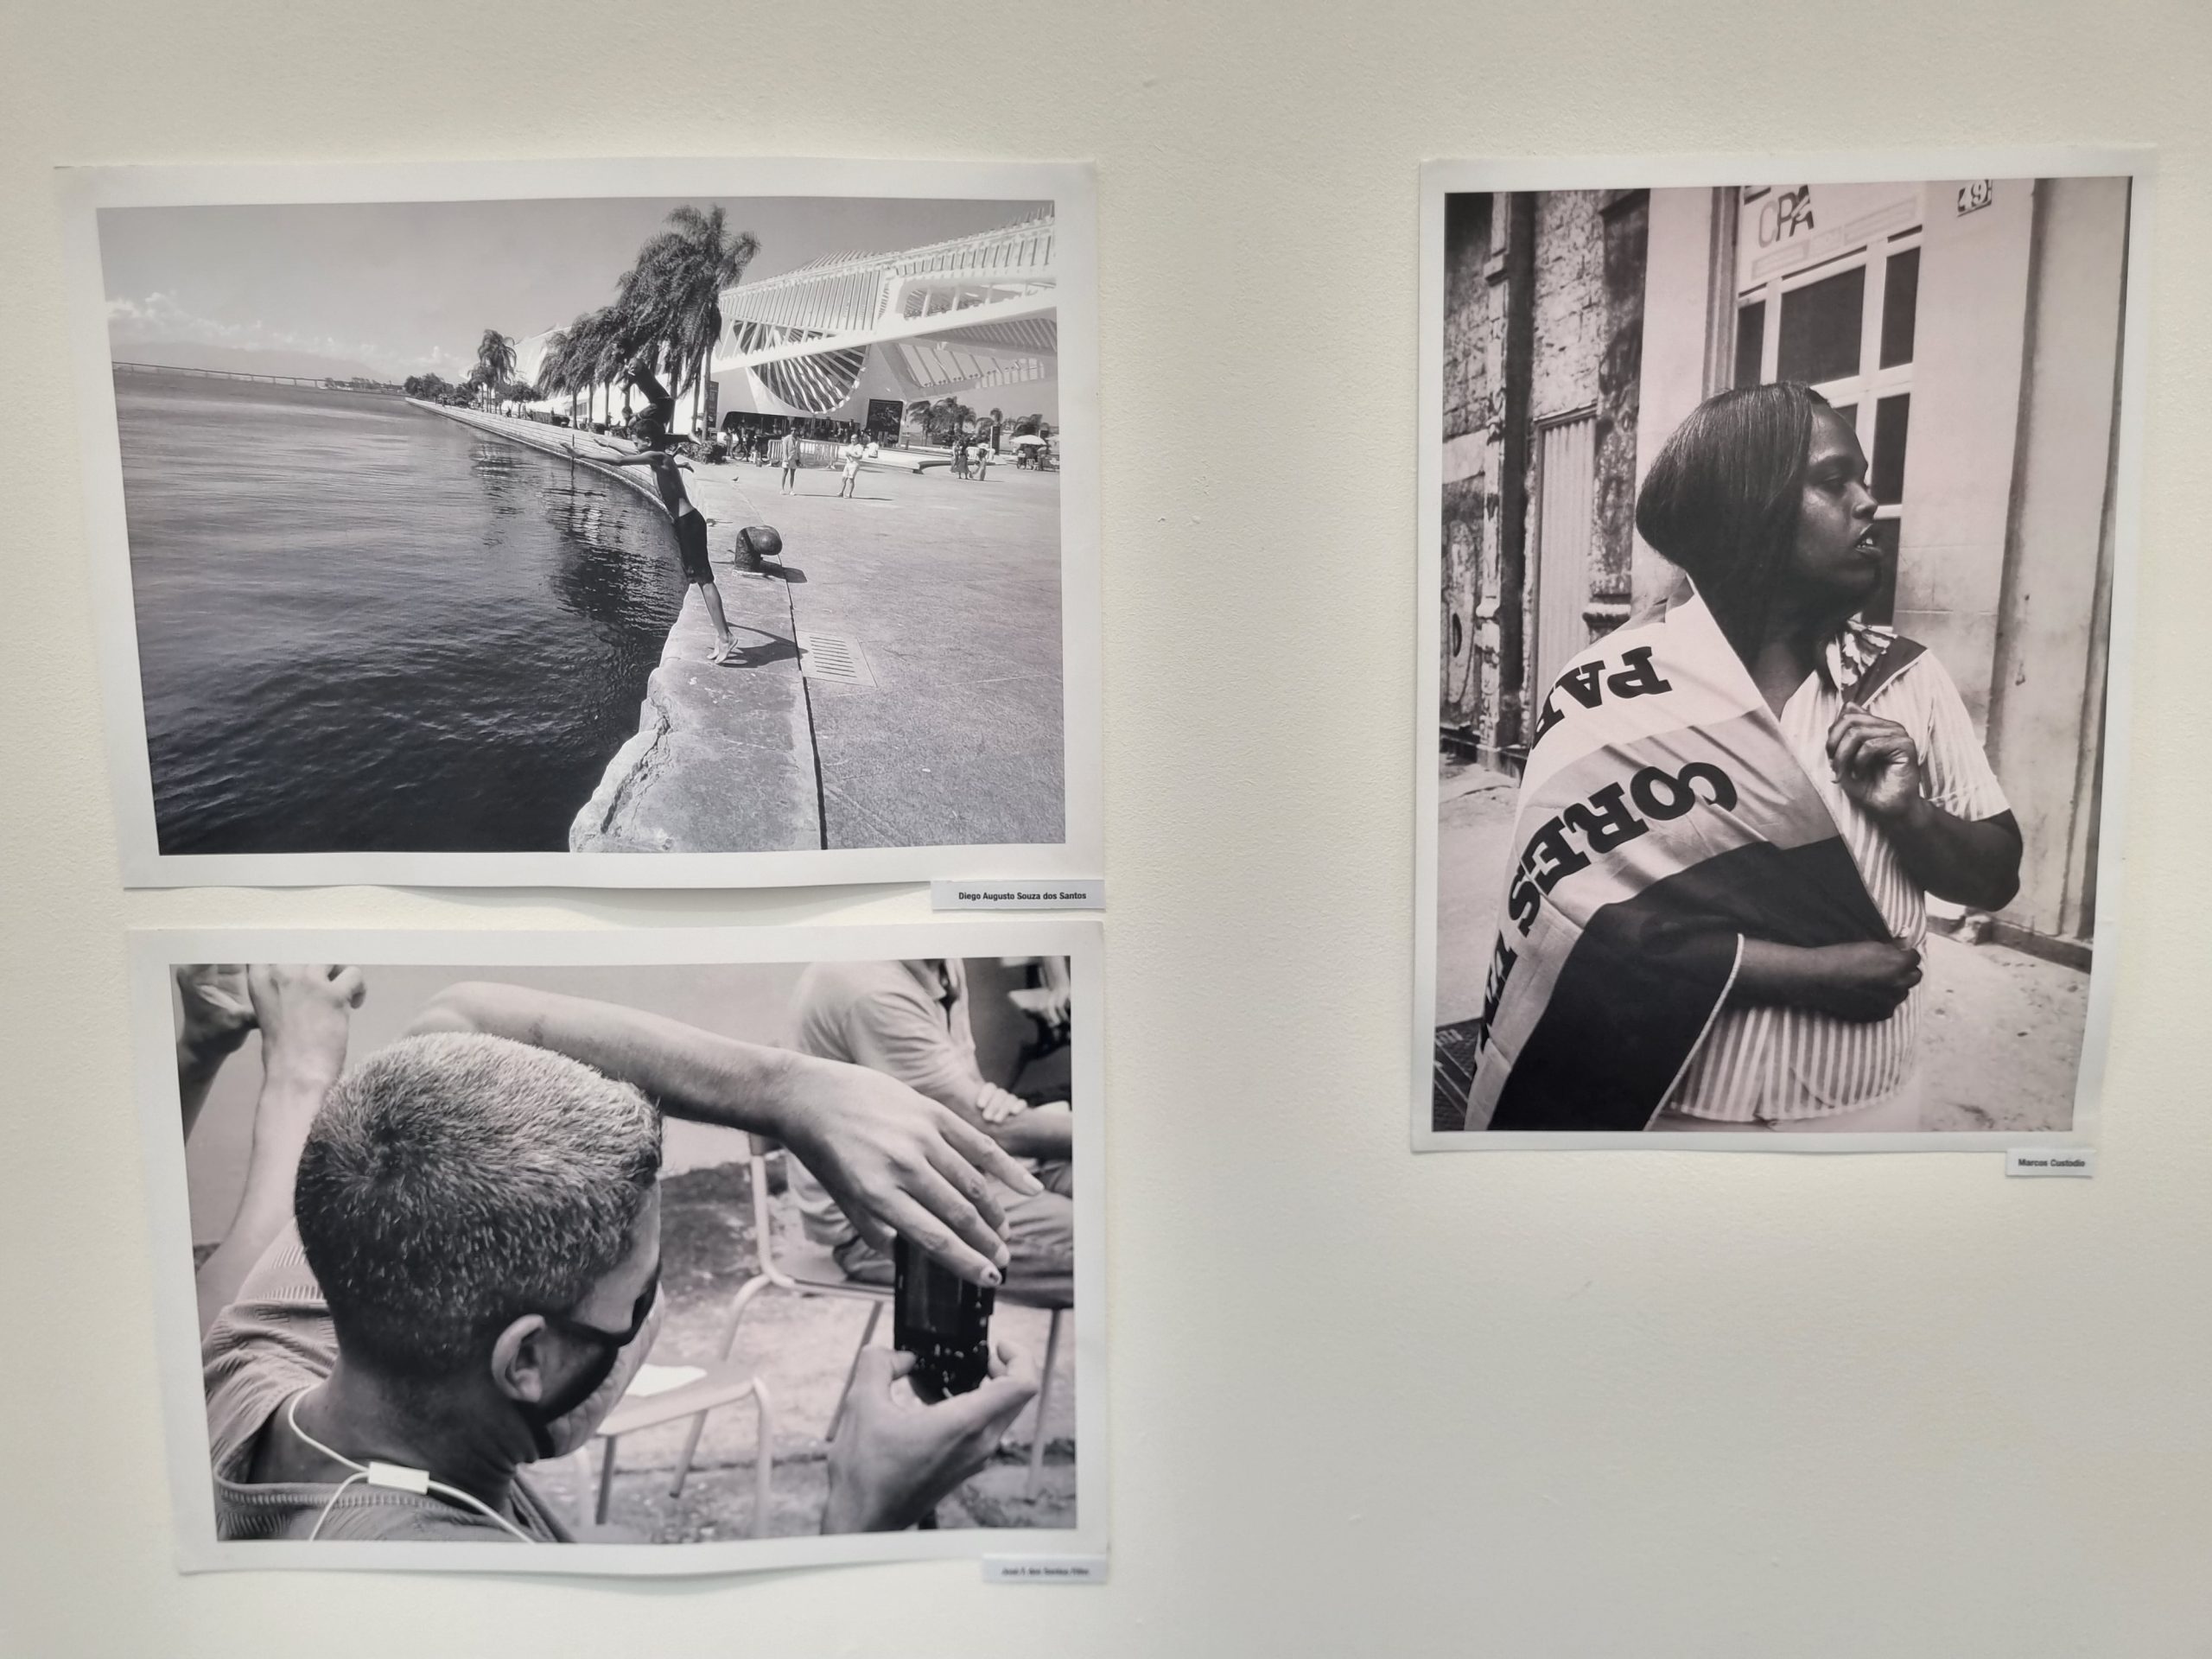 Fotos de Diego Santos, que já esteve em situação de rua, em exposição no Centro Hélio Oiticica: olhar poético sobre a rua